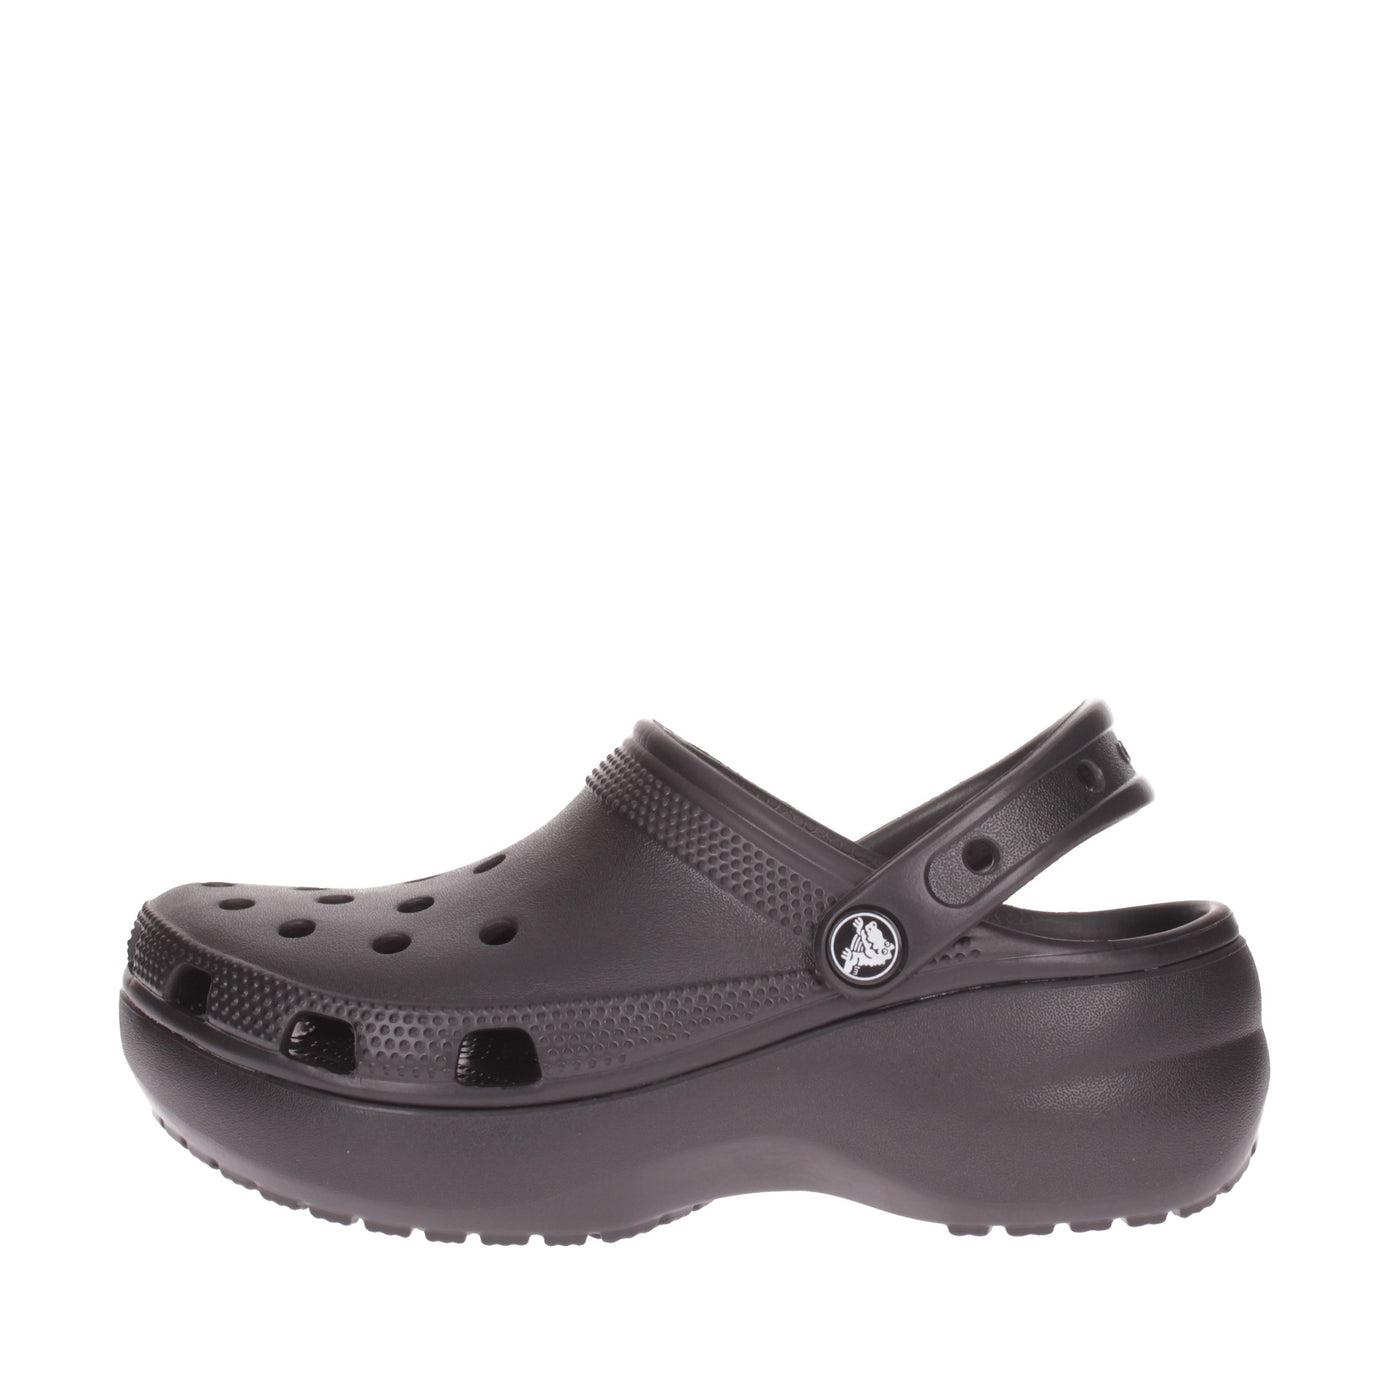 Crocs Sandalo#colore_nero